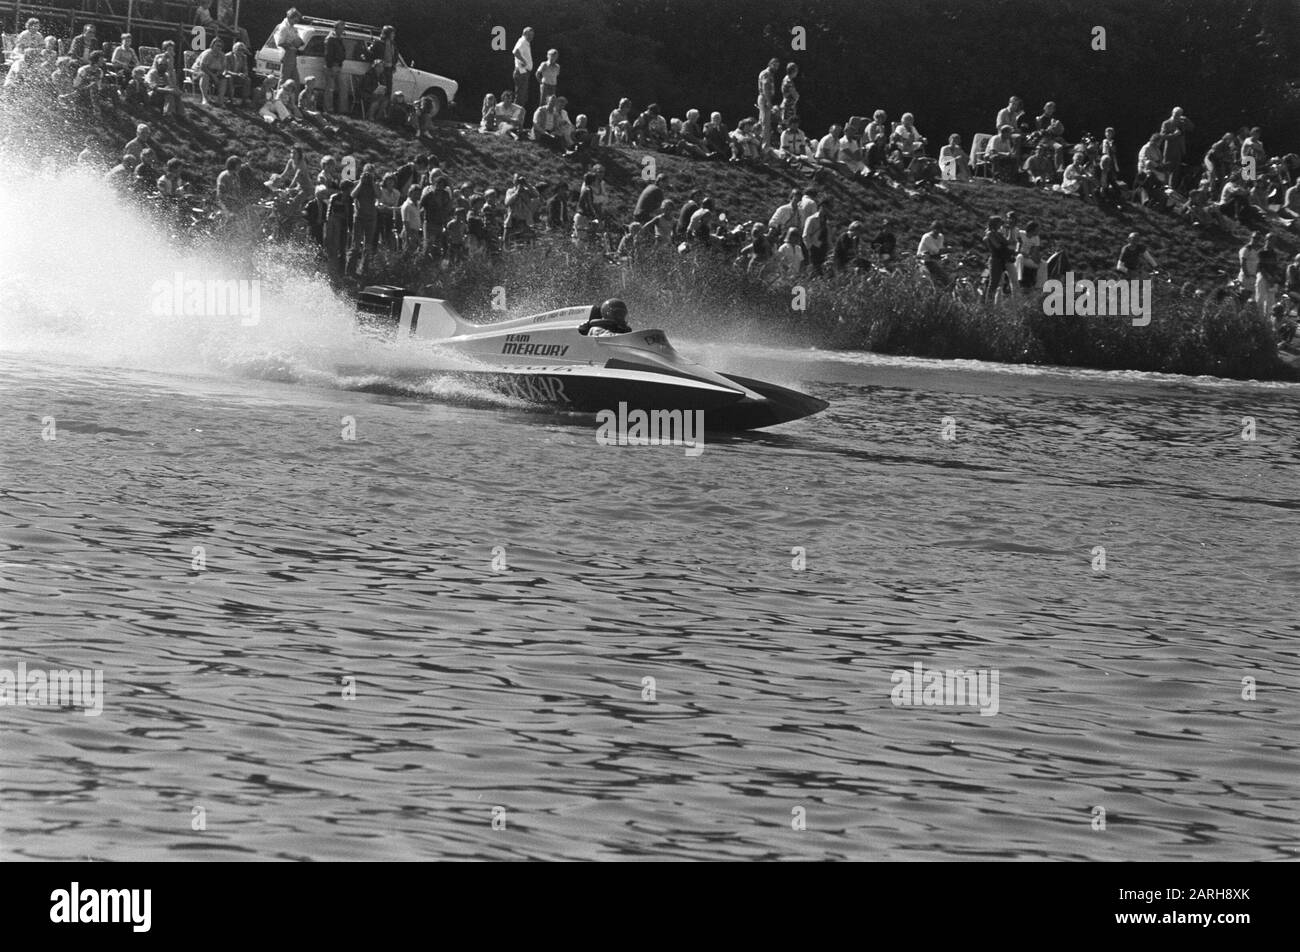 World Cup Speedboatraces OI-Klasse auf Bosbaan; Cees van de Veld in Aktion Datum: 4. september 1977 Schlagwörter: Schnellboot-Rennen Stockfoto